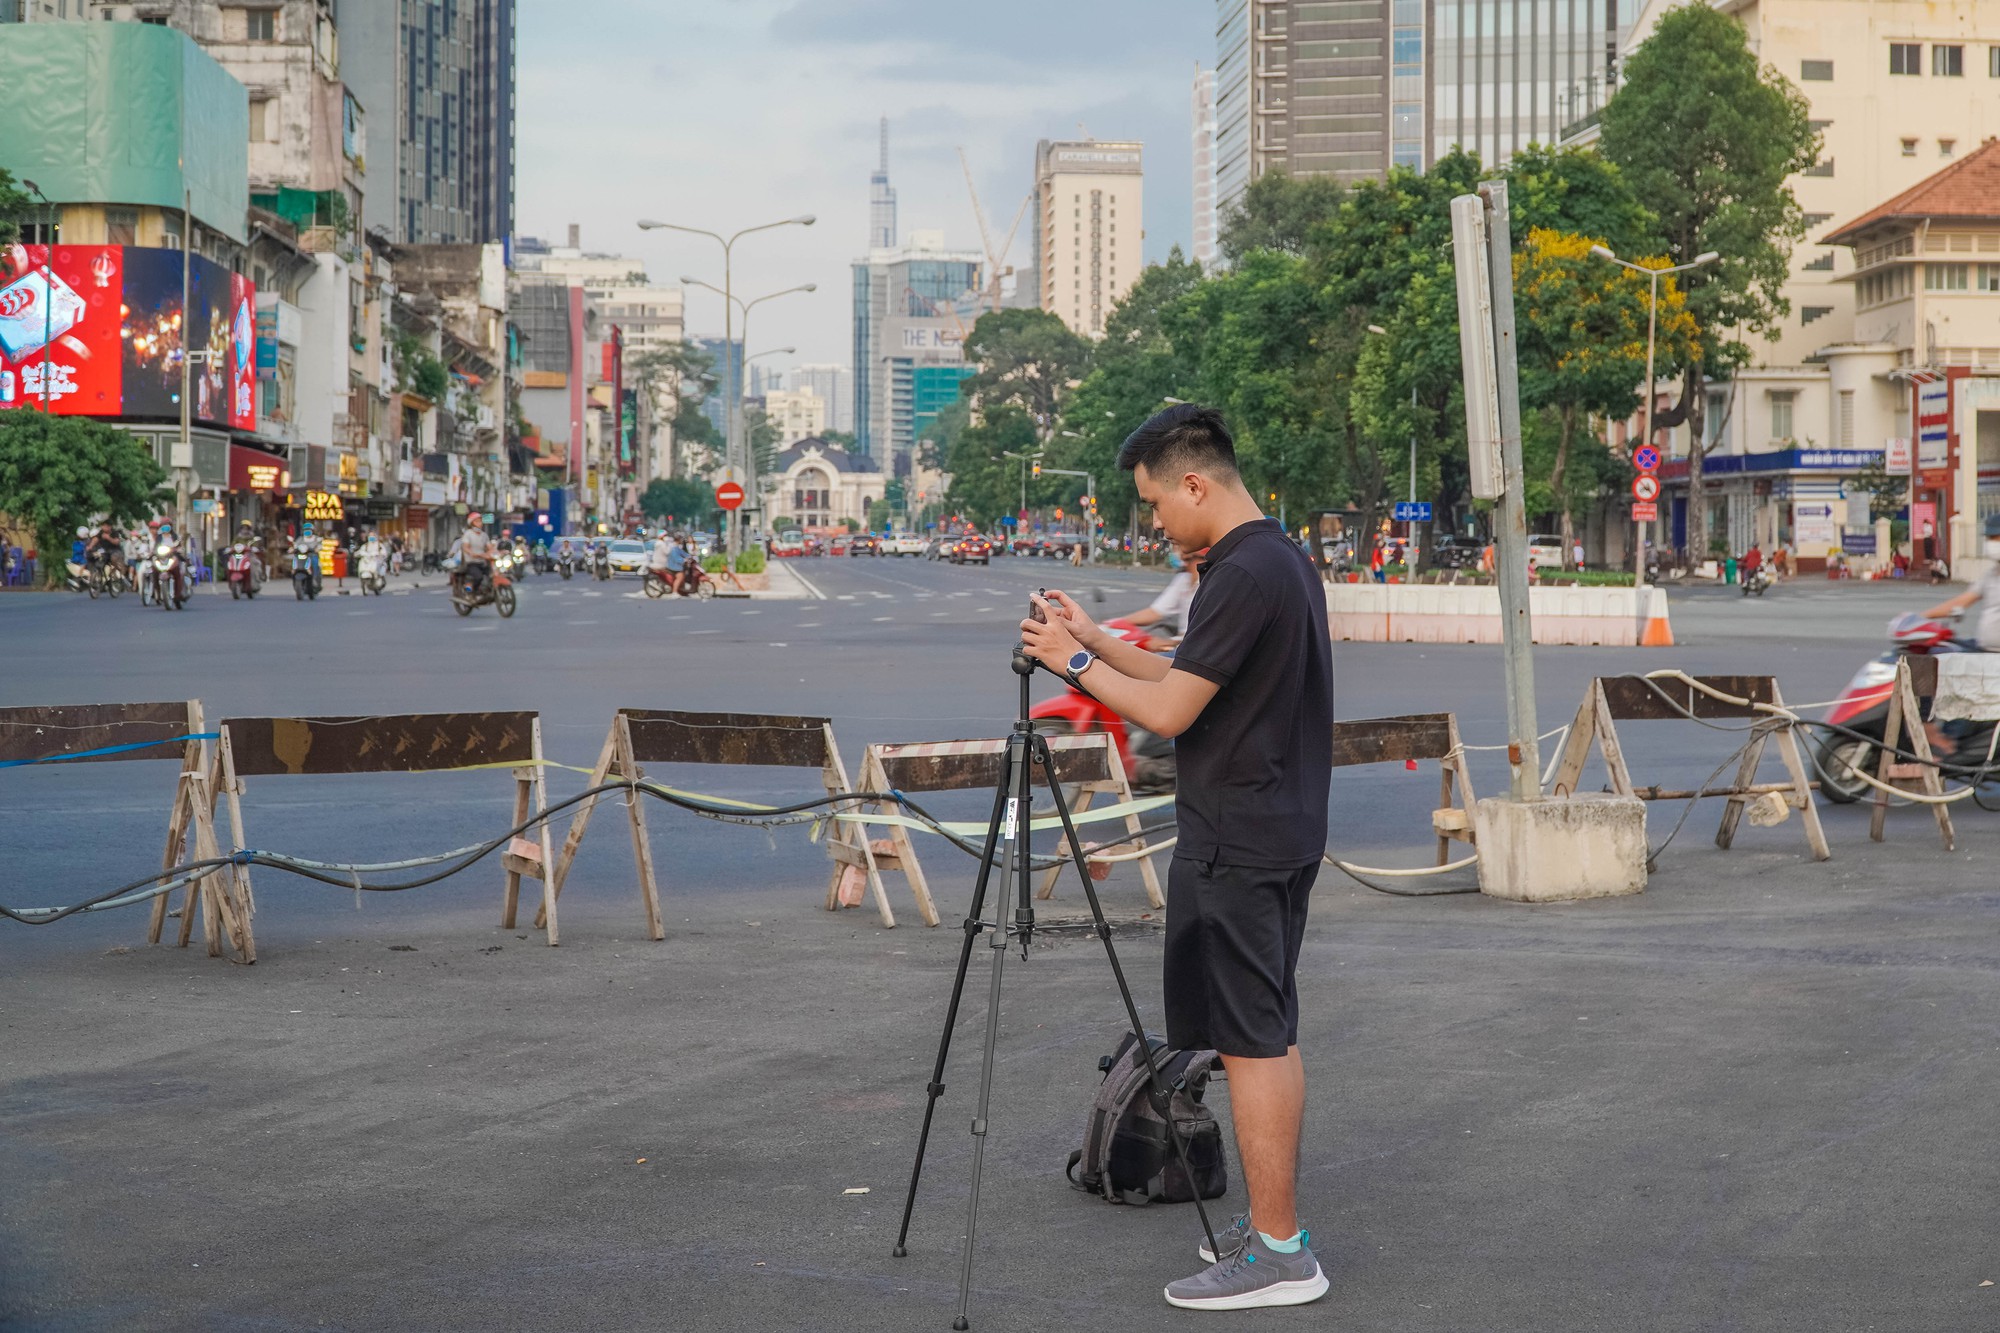 Hình ảnh liên quan đến Bến Thành này thật đặc trưng cho thành phố Hồ Chí Minh. Bức ảnh mang đến cho bạn một cái nhìn sâu sắc về hội chợ đầy sôi động này. Bằng tất cả vẻ đẹp và độc đáo của nó, bạn sẽ đón nhận được sự phấn khích của thành phố lớn.